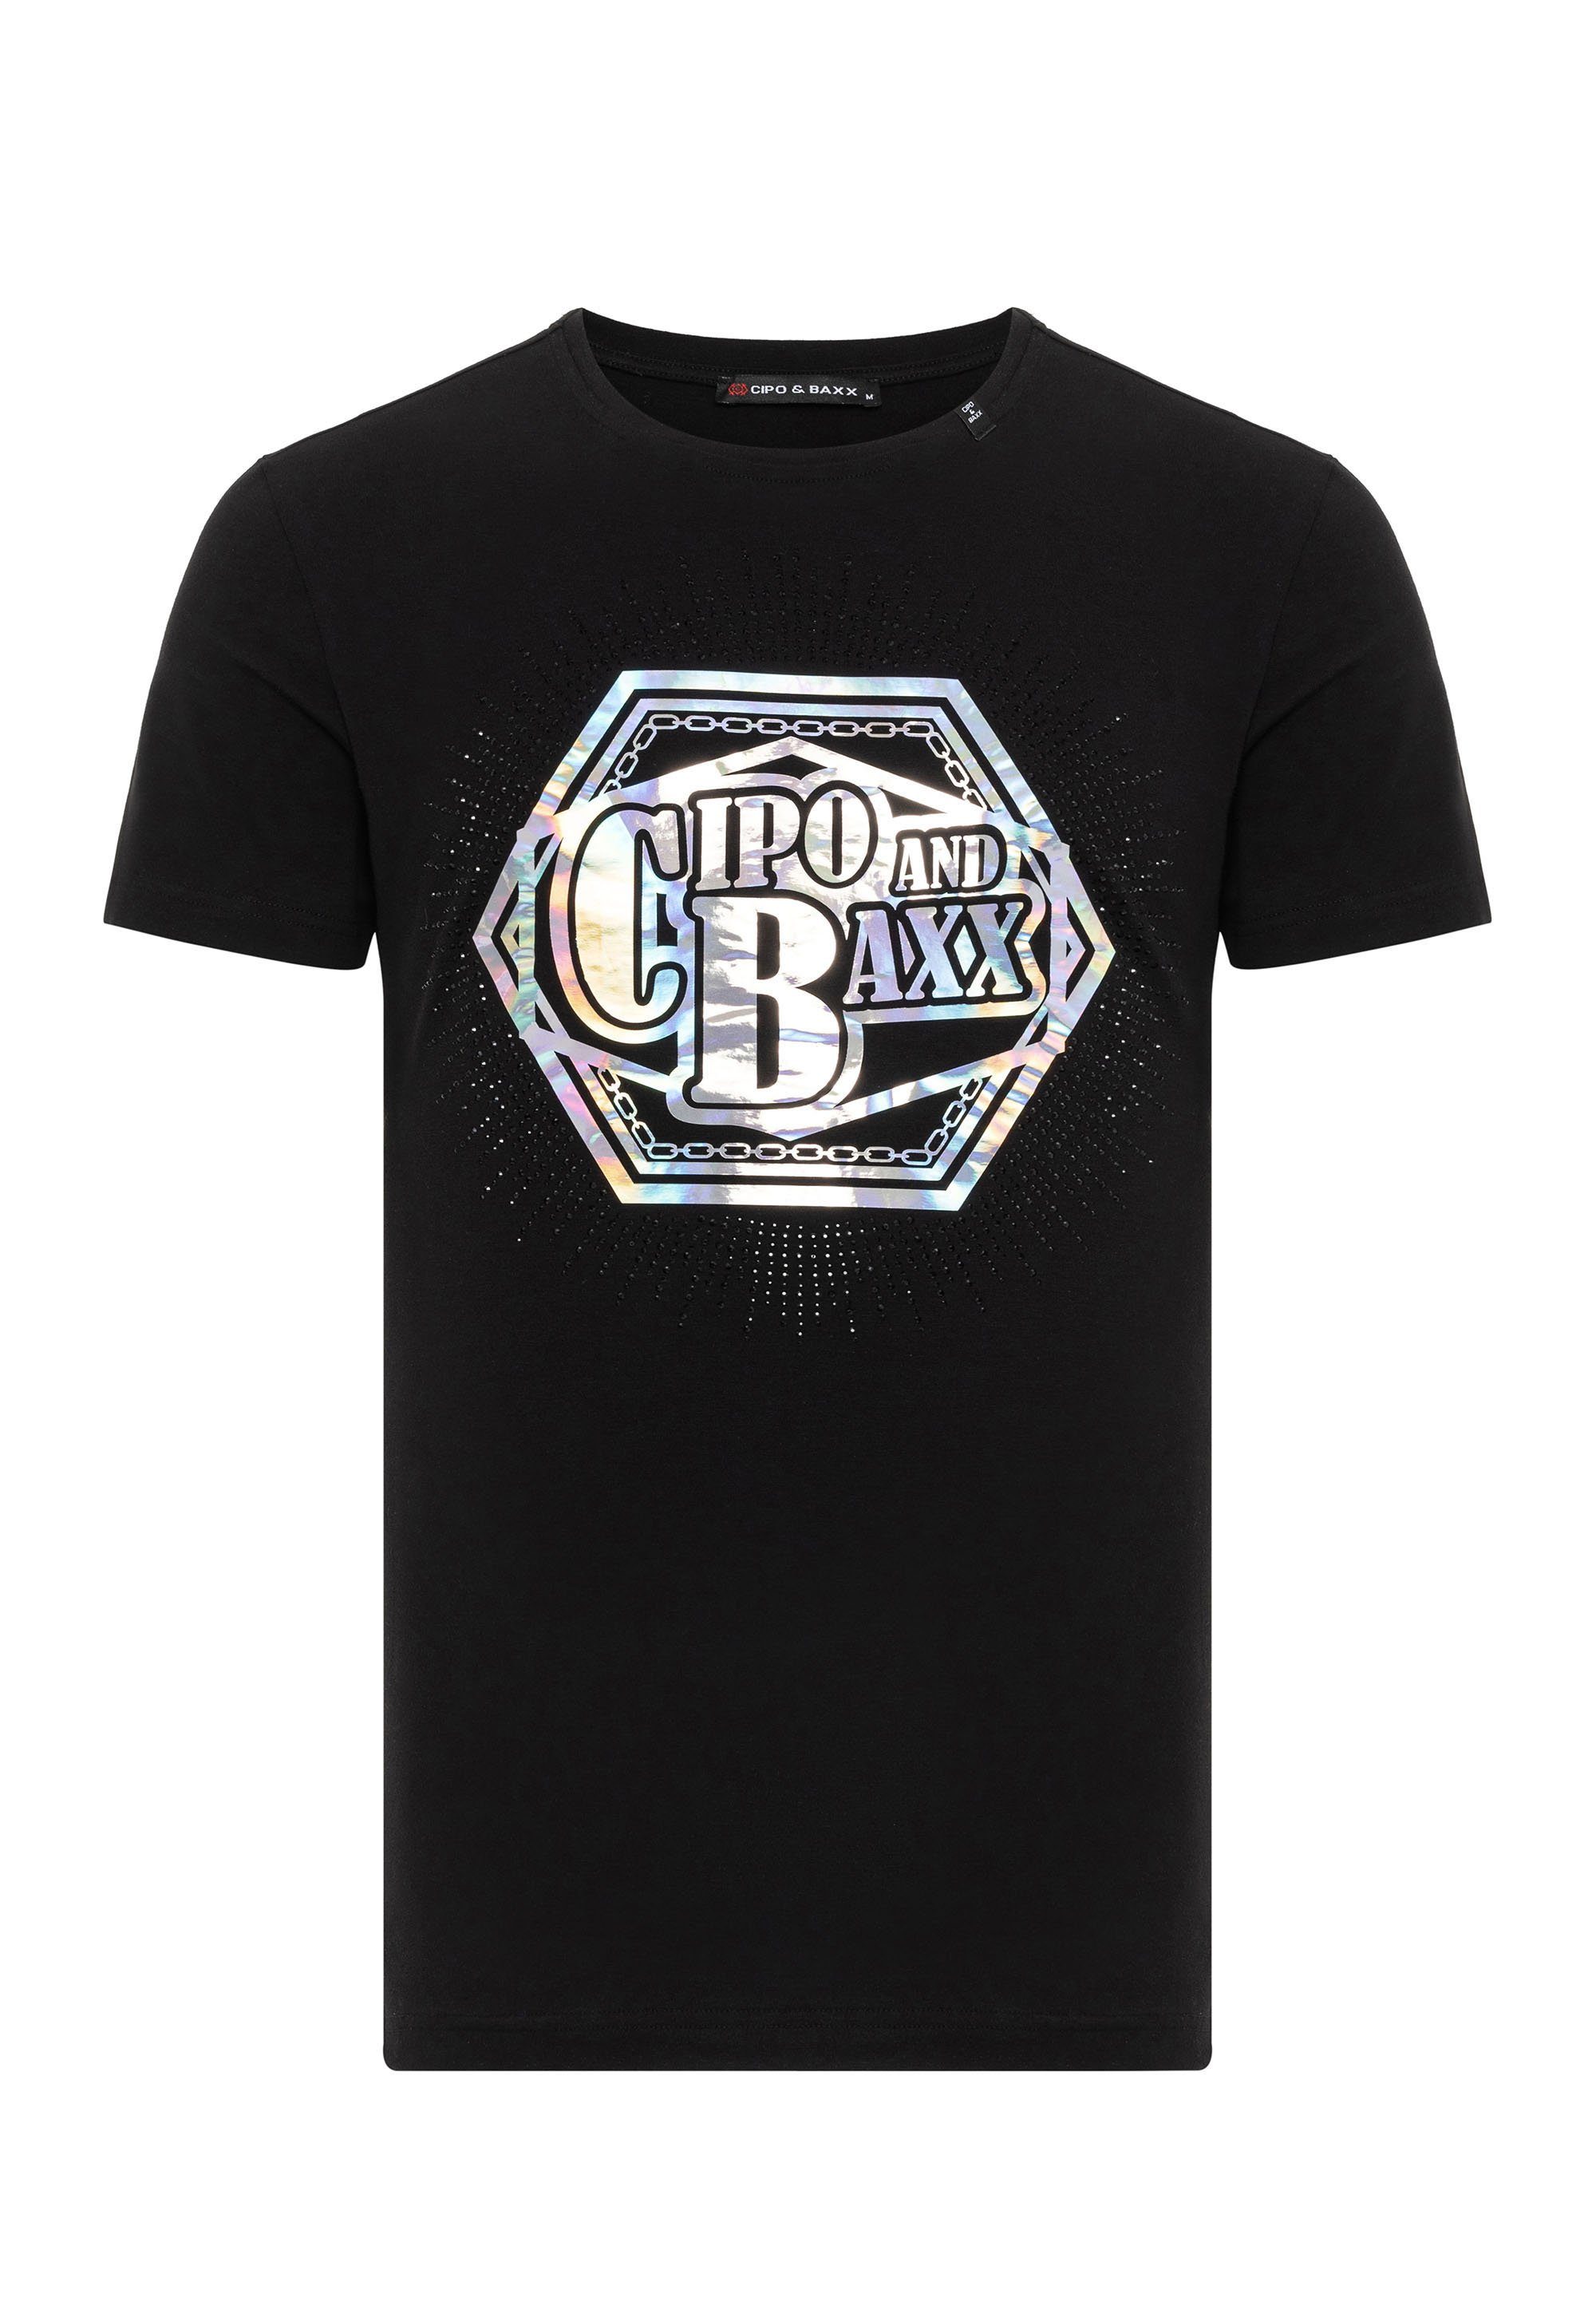 T-Shirt farbenfrohem & mit Baxx Cipo schwarz Marken-Schriftzug